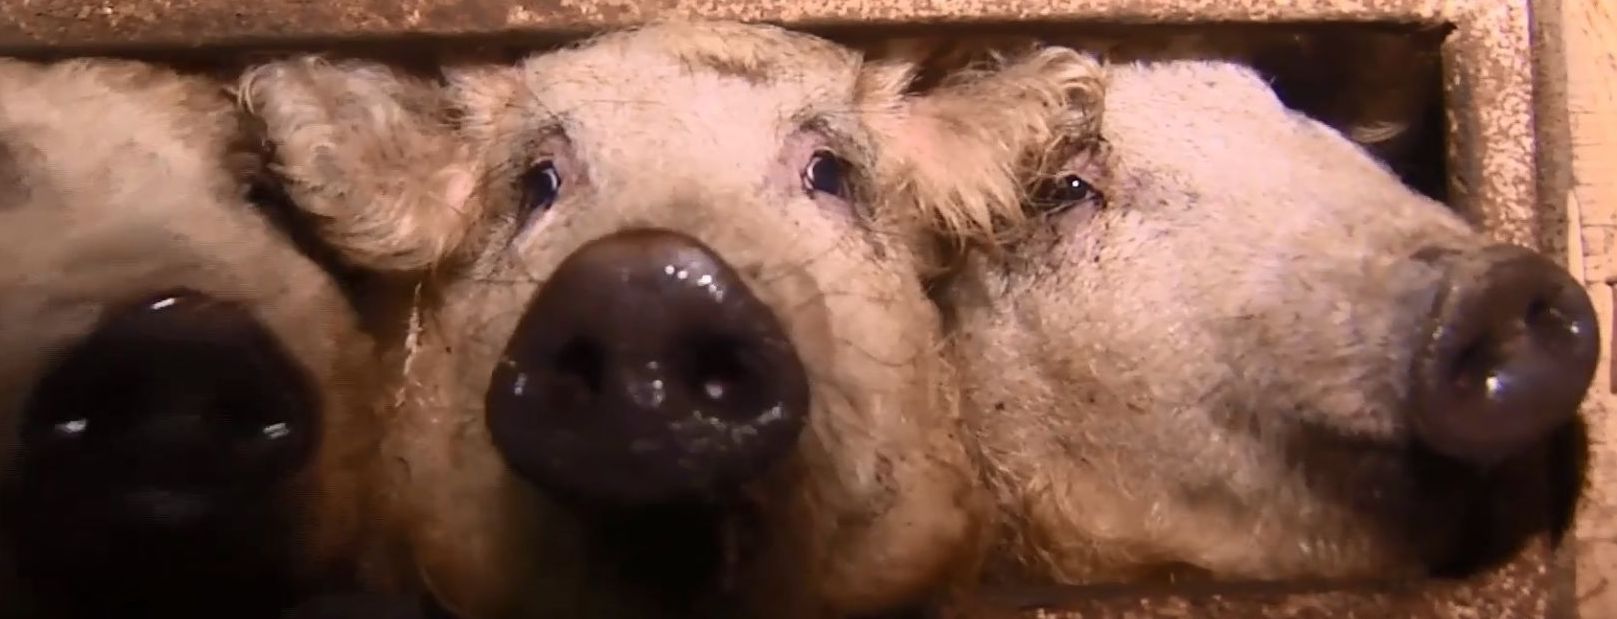 В Украине возникла мода на разведение мохнатых "баранообразных" свиней